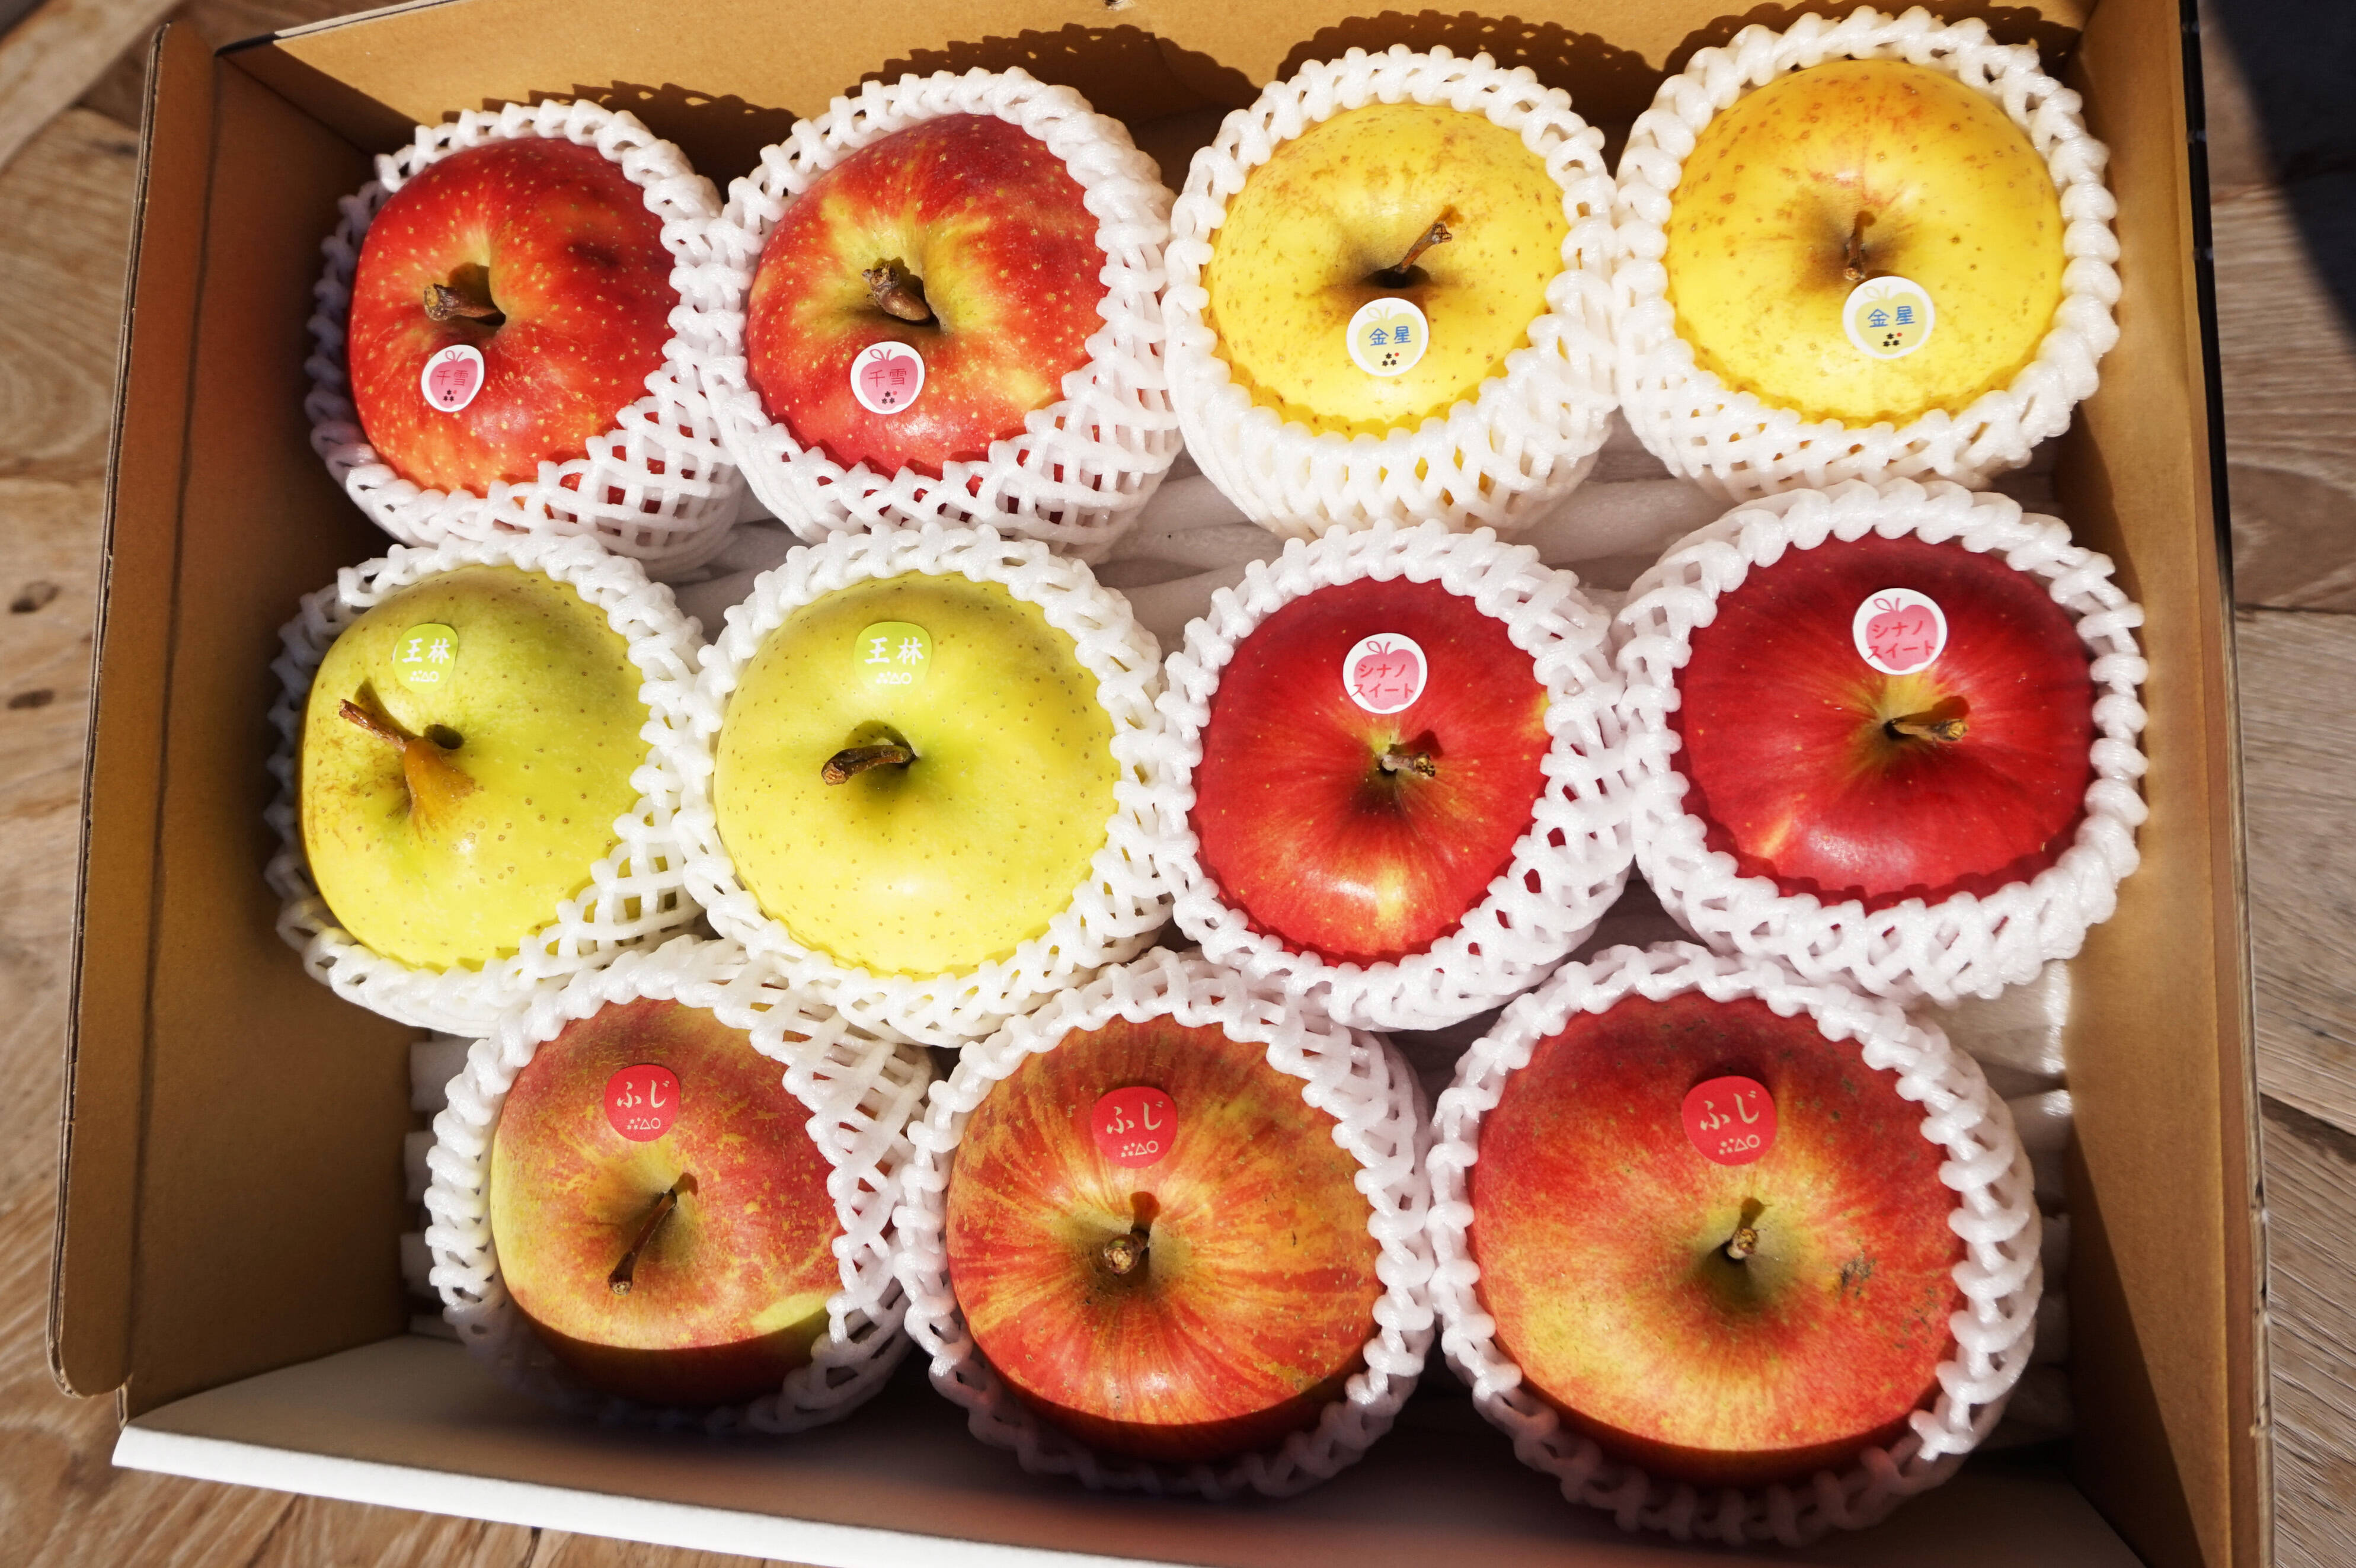 青森県 弘前市 加工用 摘果 りんご 約10kg 王林・ジョナゴールド・サンふじ